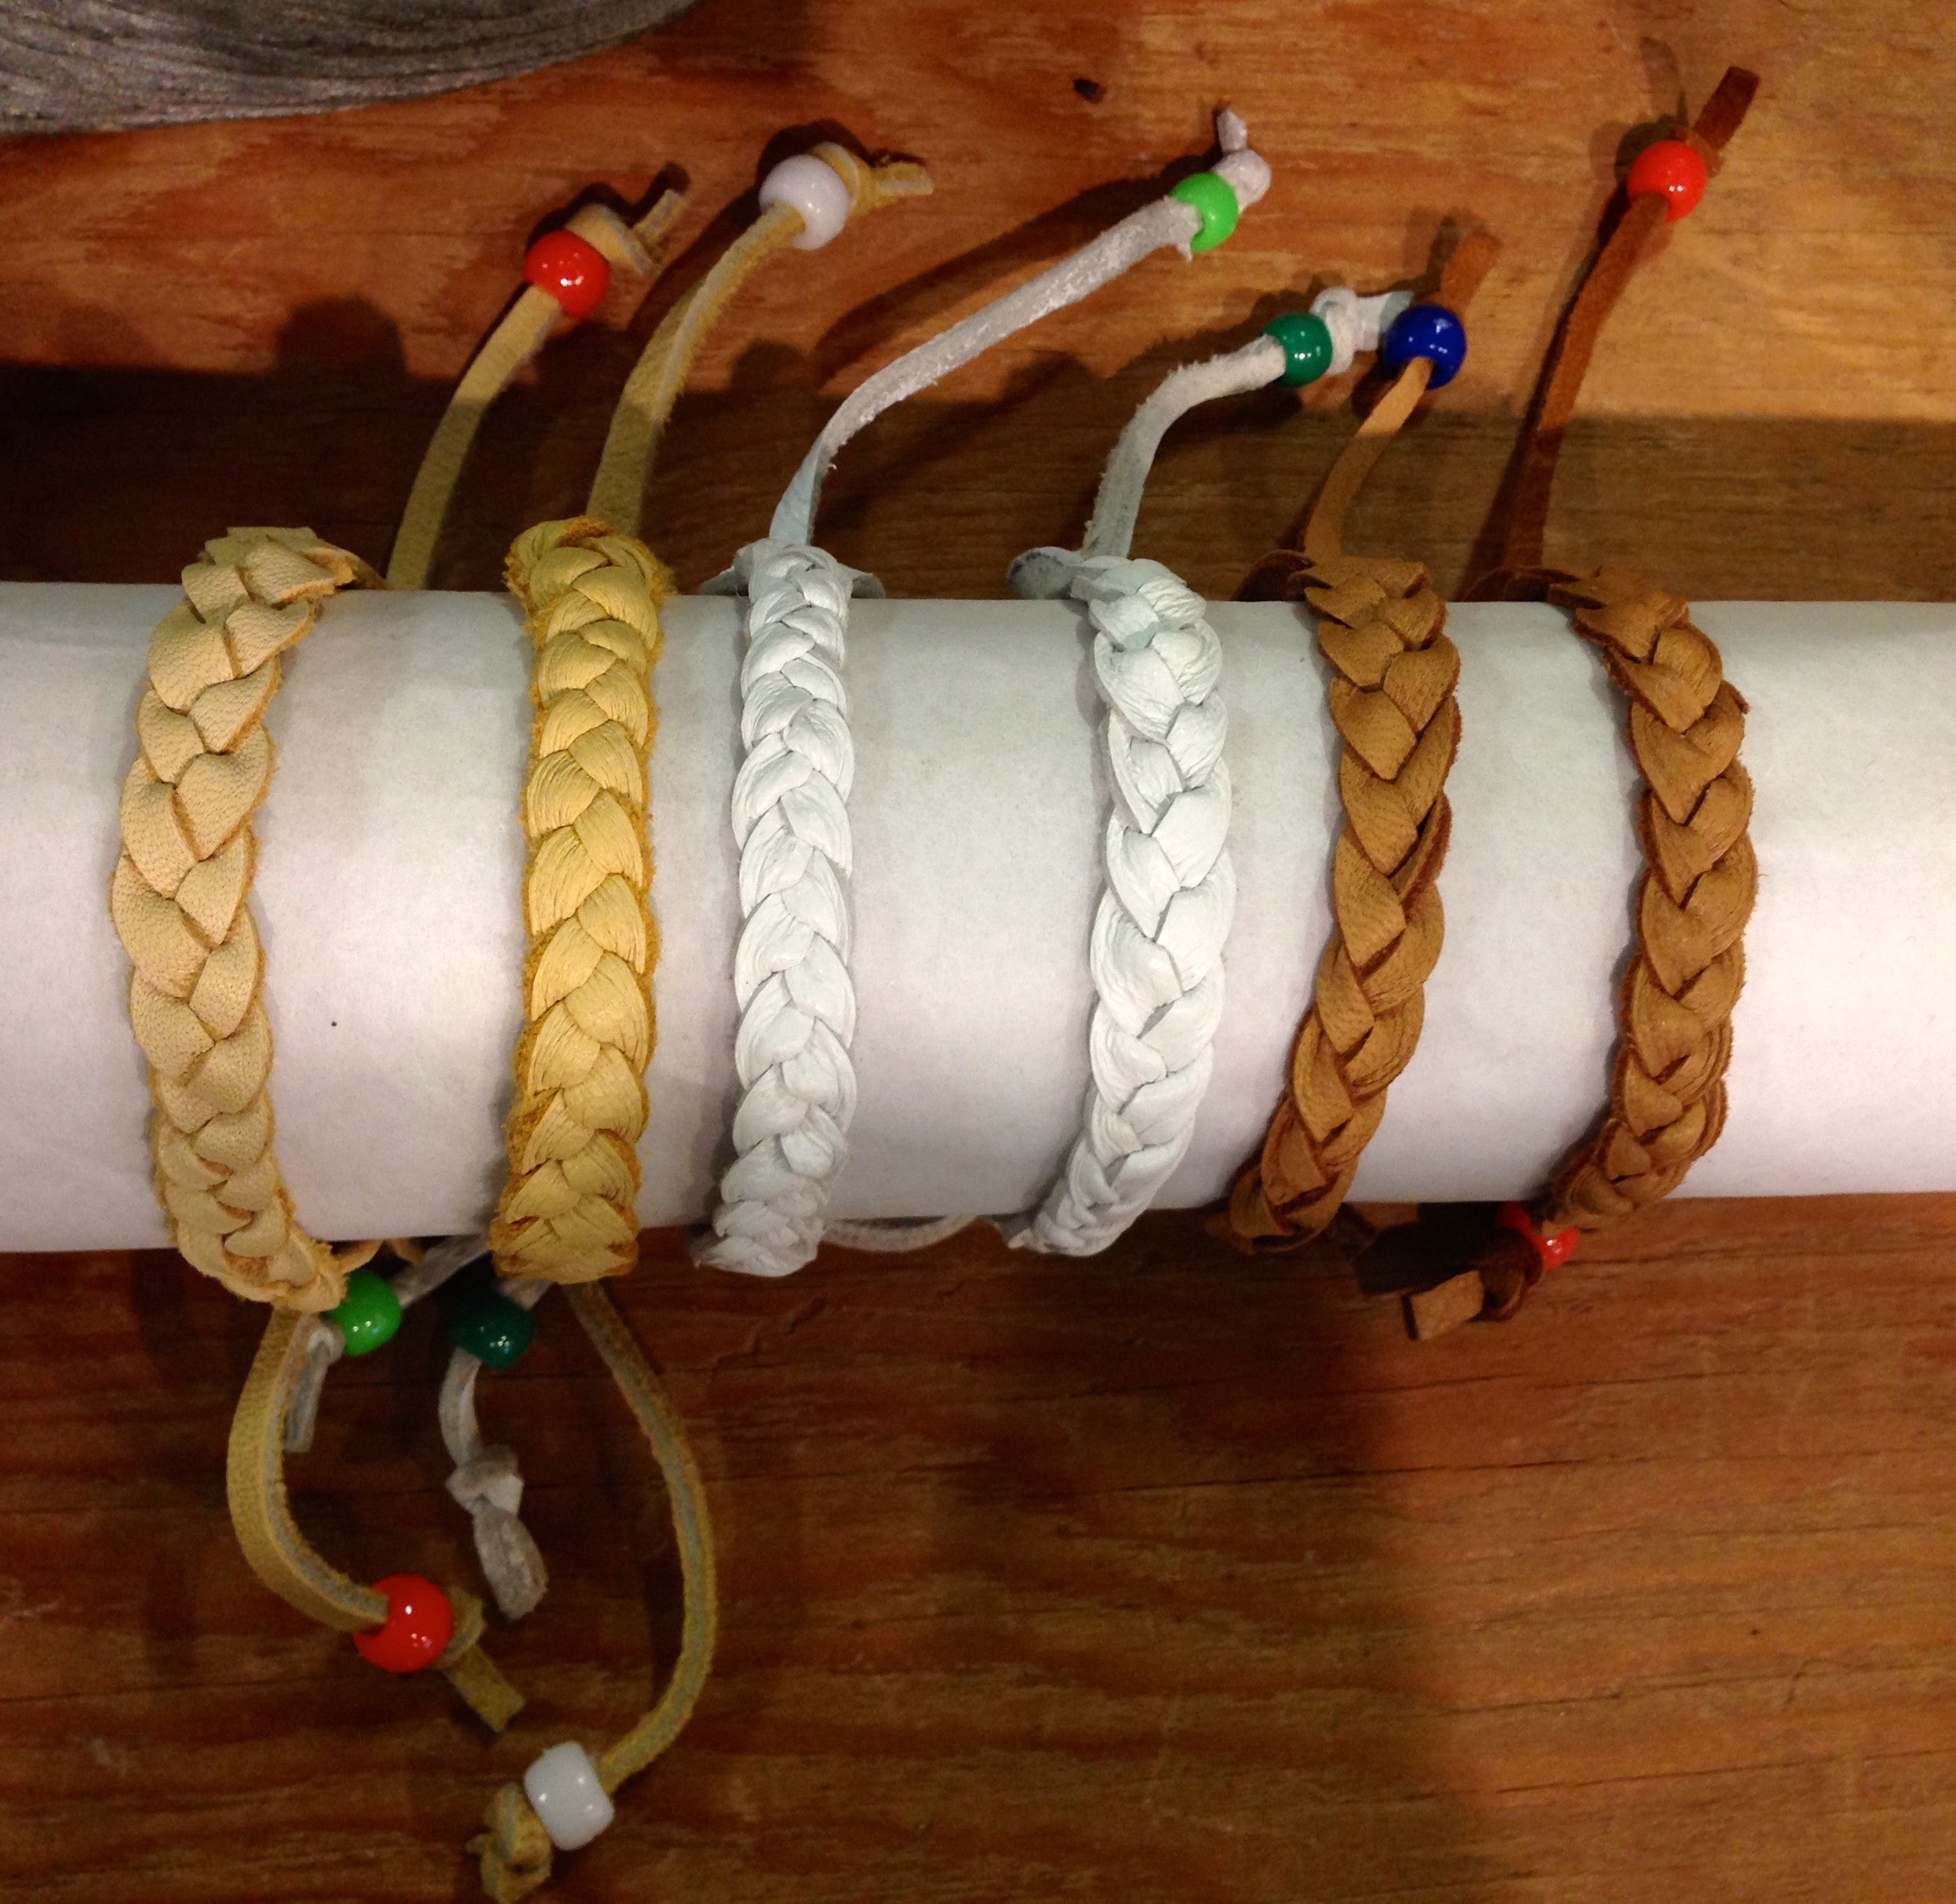 How to Make a Wax Cord Bracelet (A Pura Vida Inspired DIY) - Adventures of  a DIY Mom